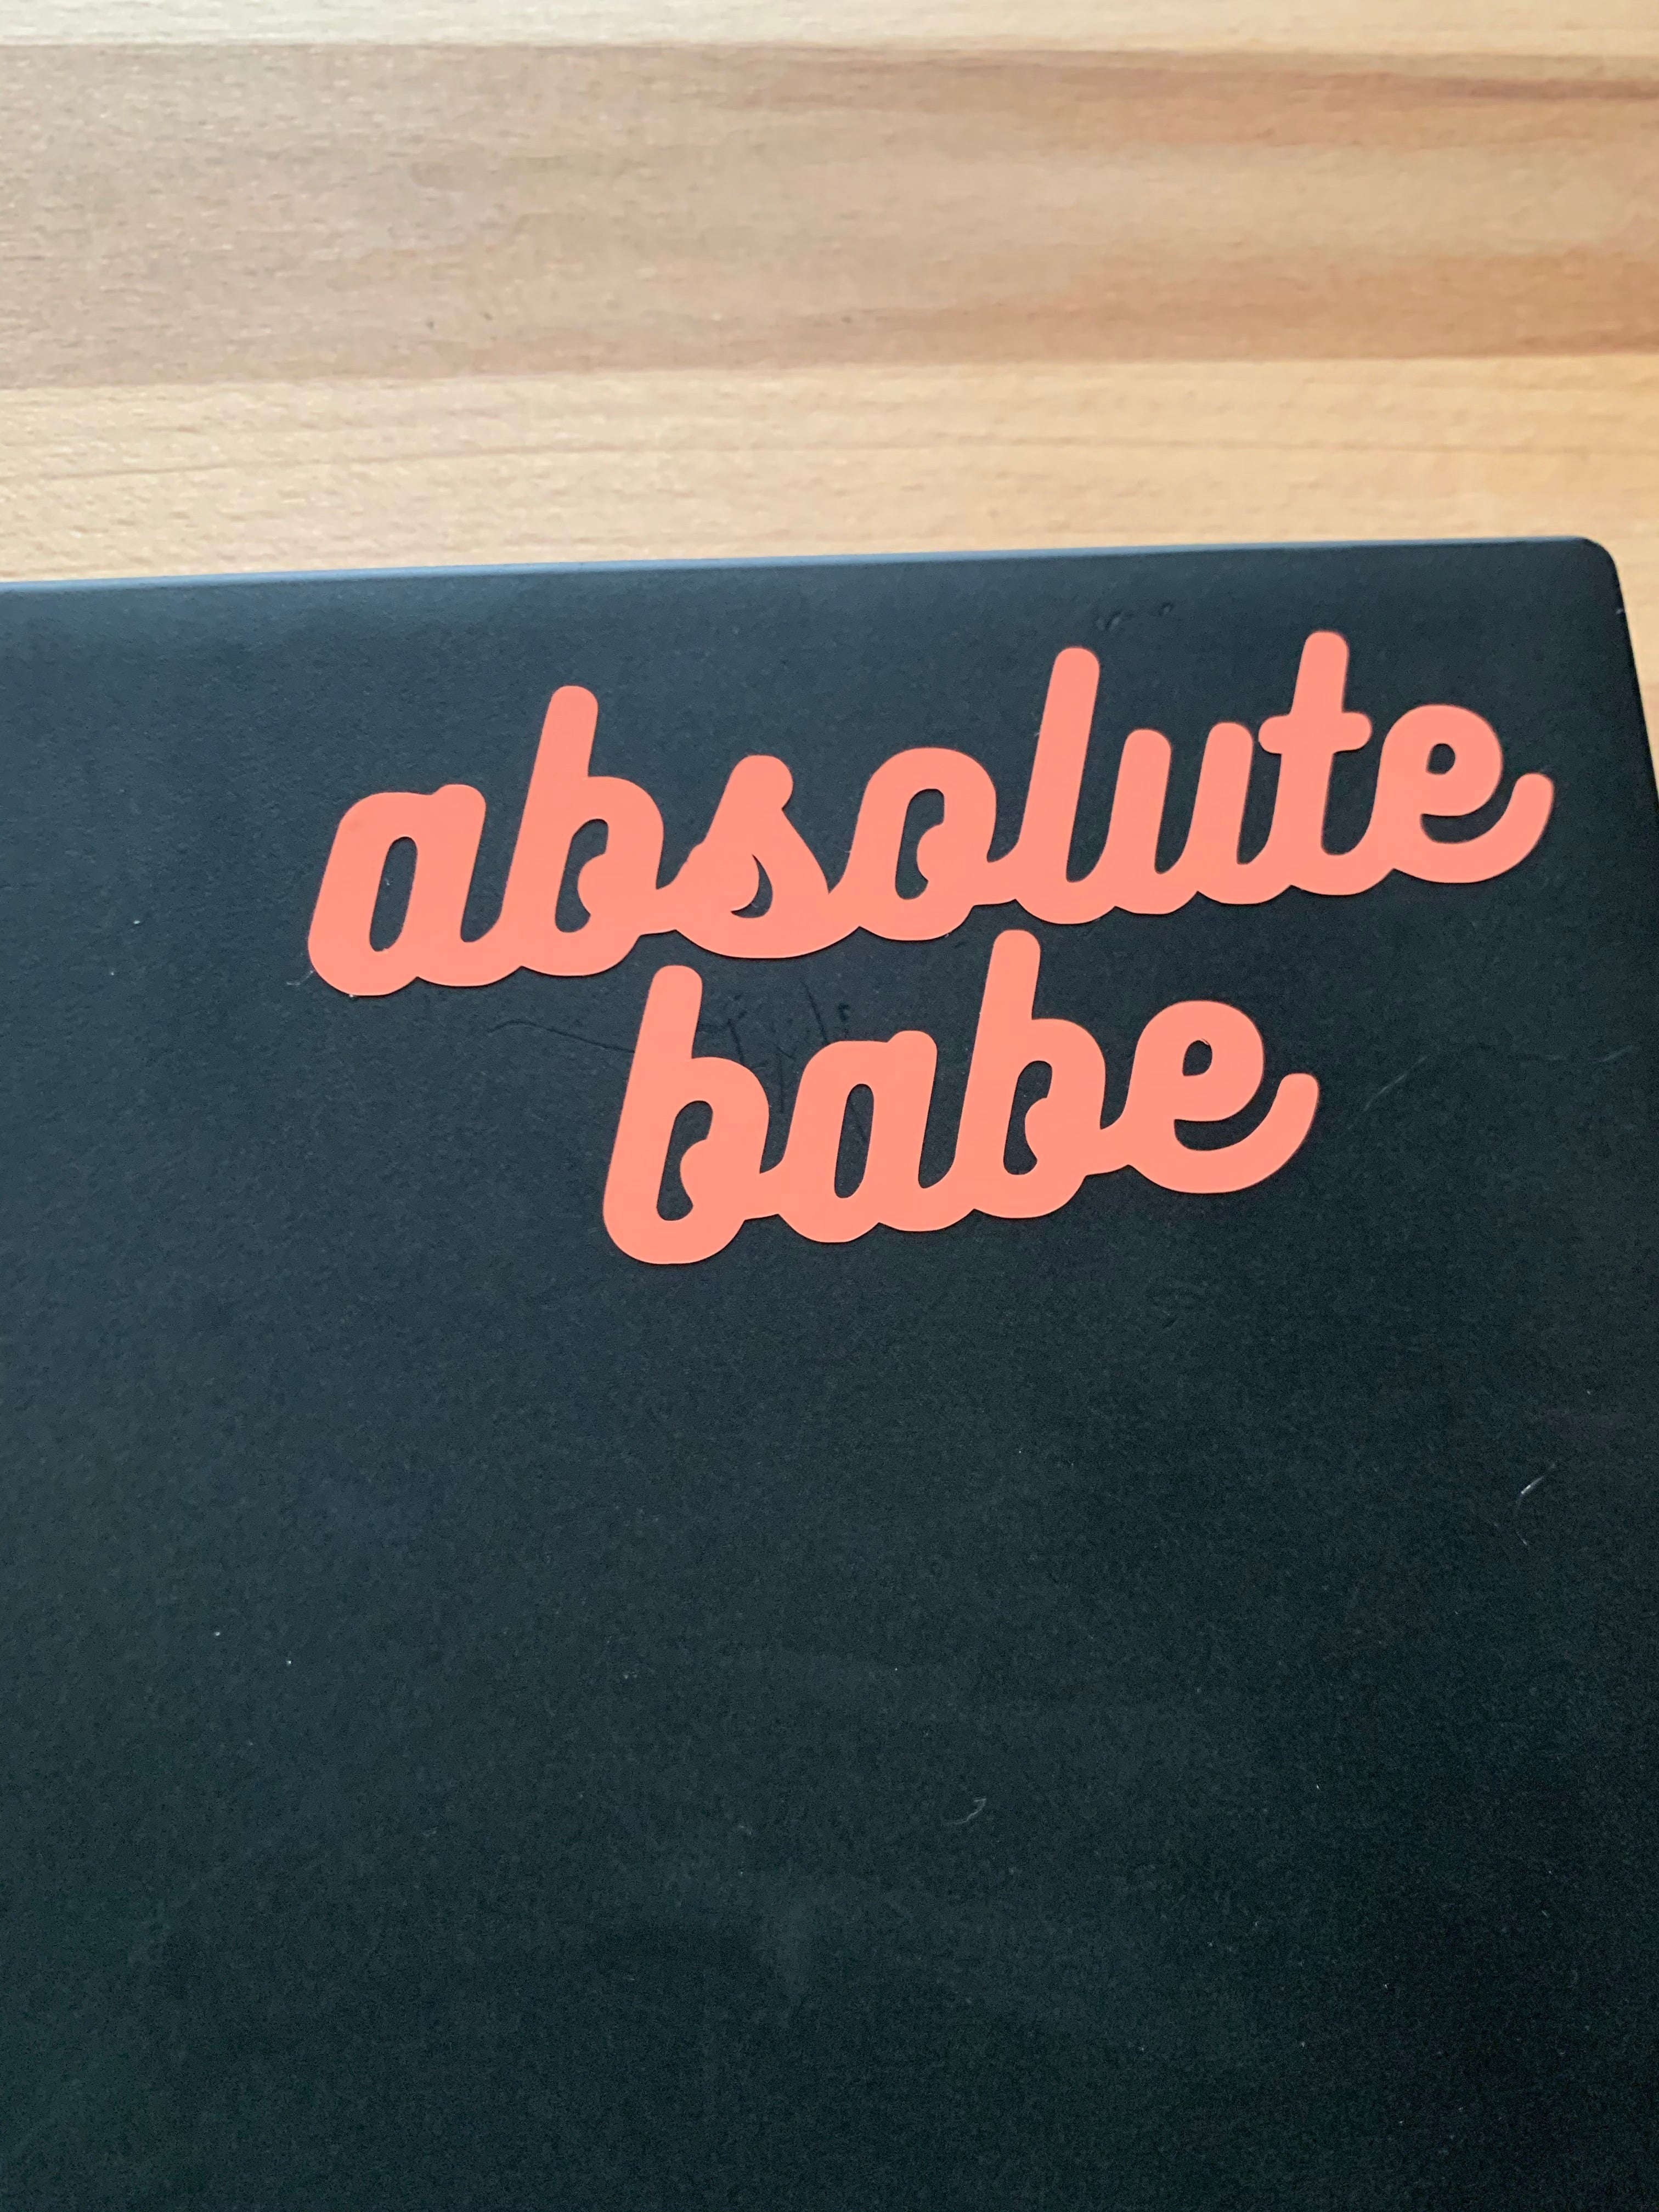 Mirror stickers vinyl decals - Absolute Babe